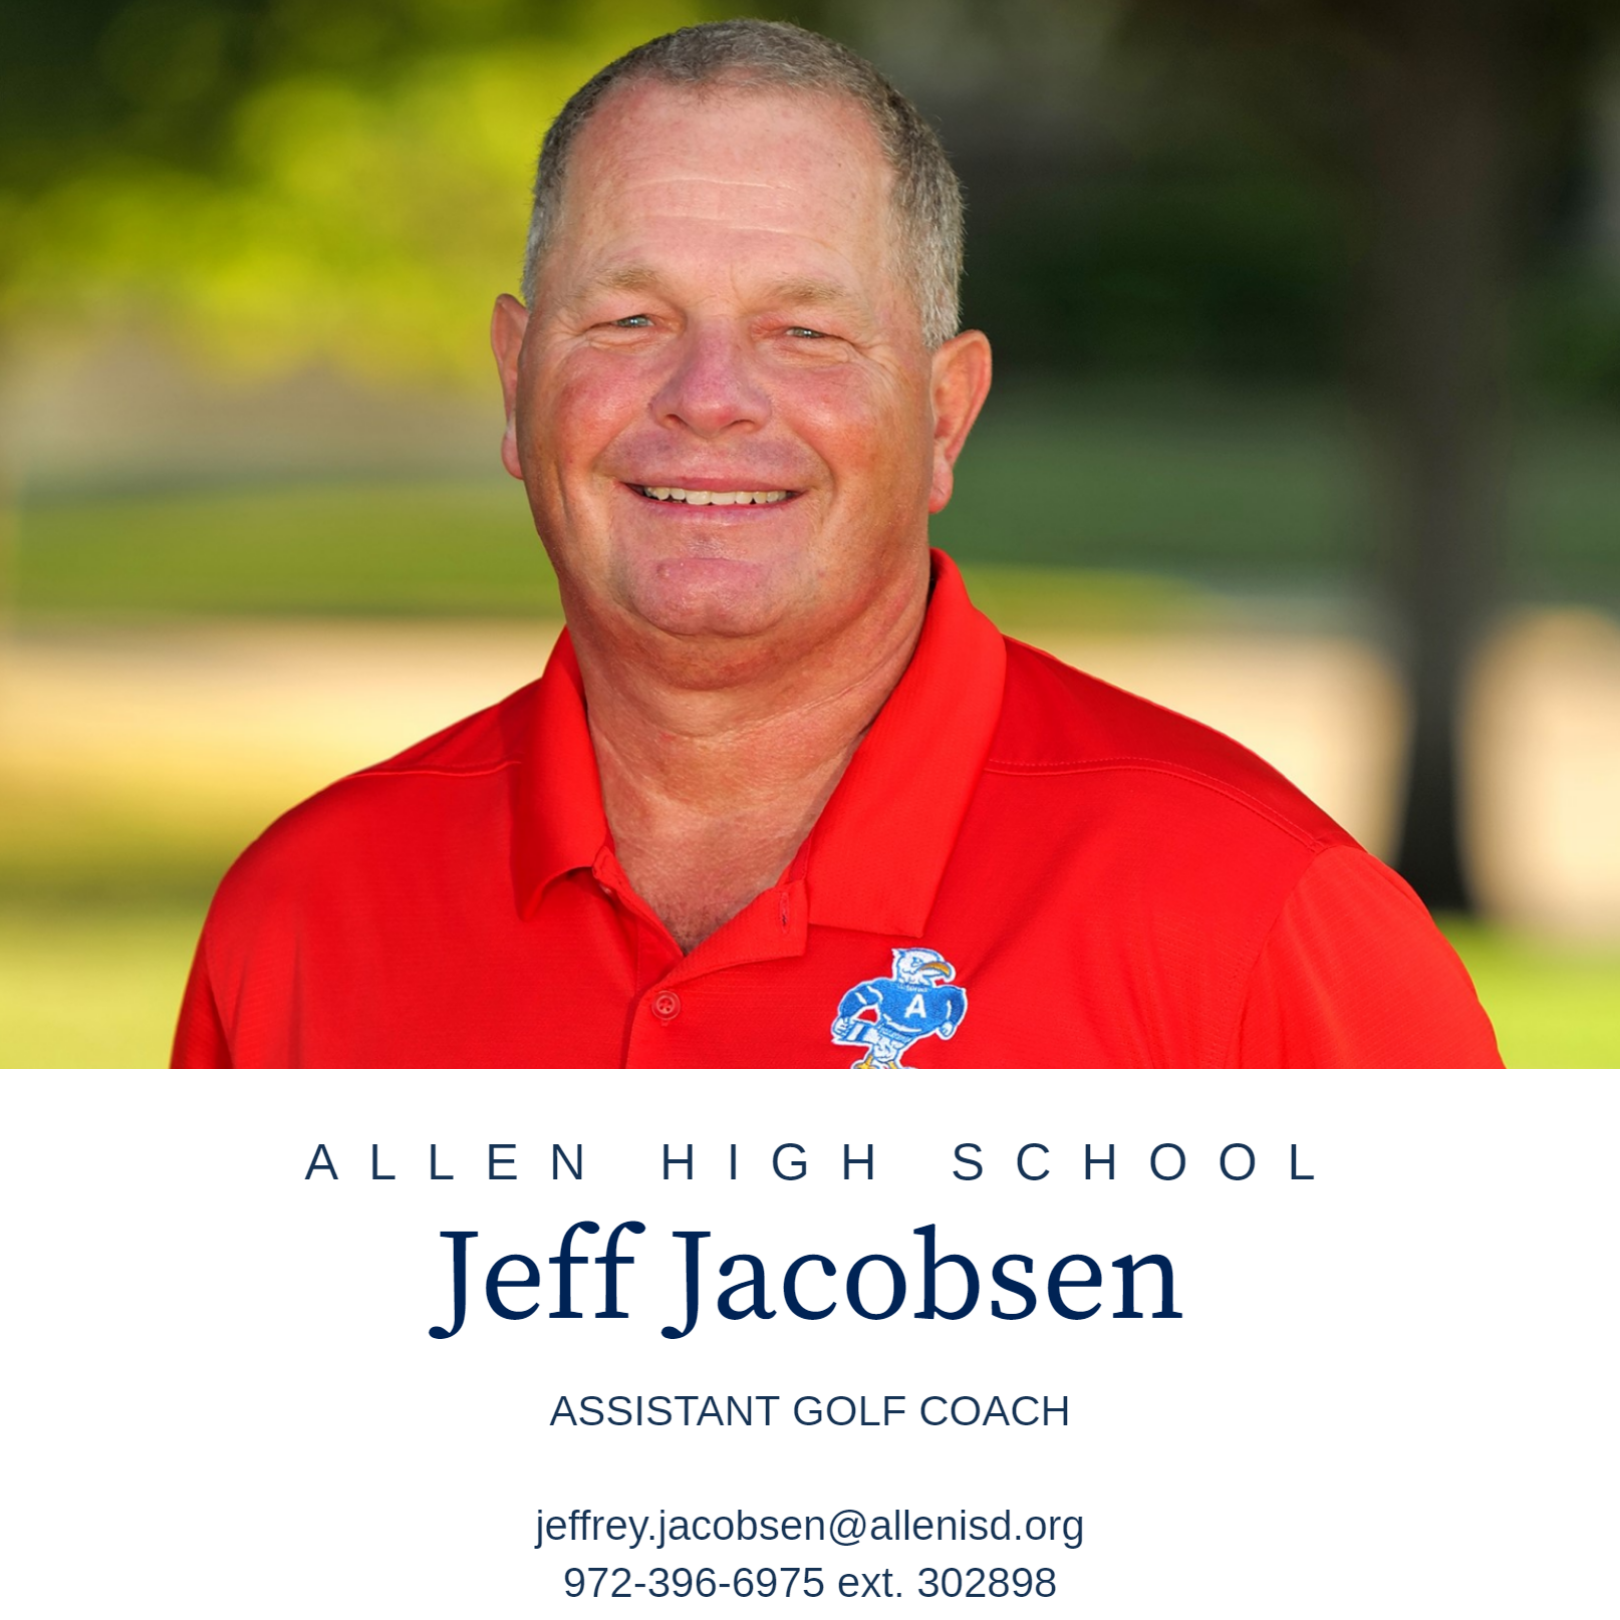 Jeff Jacobsen info